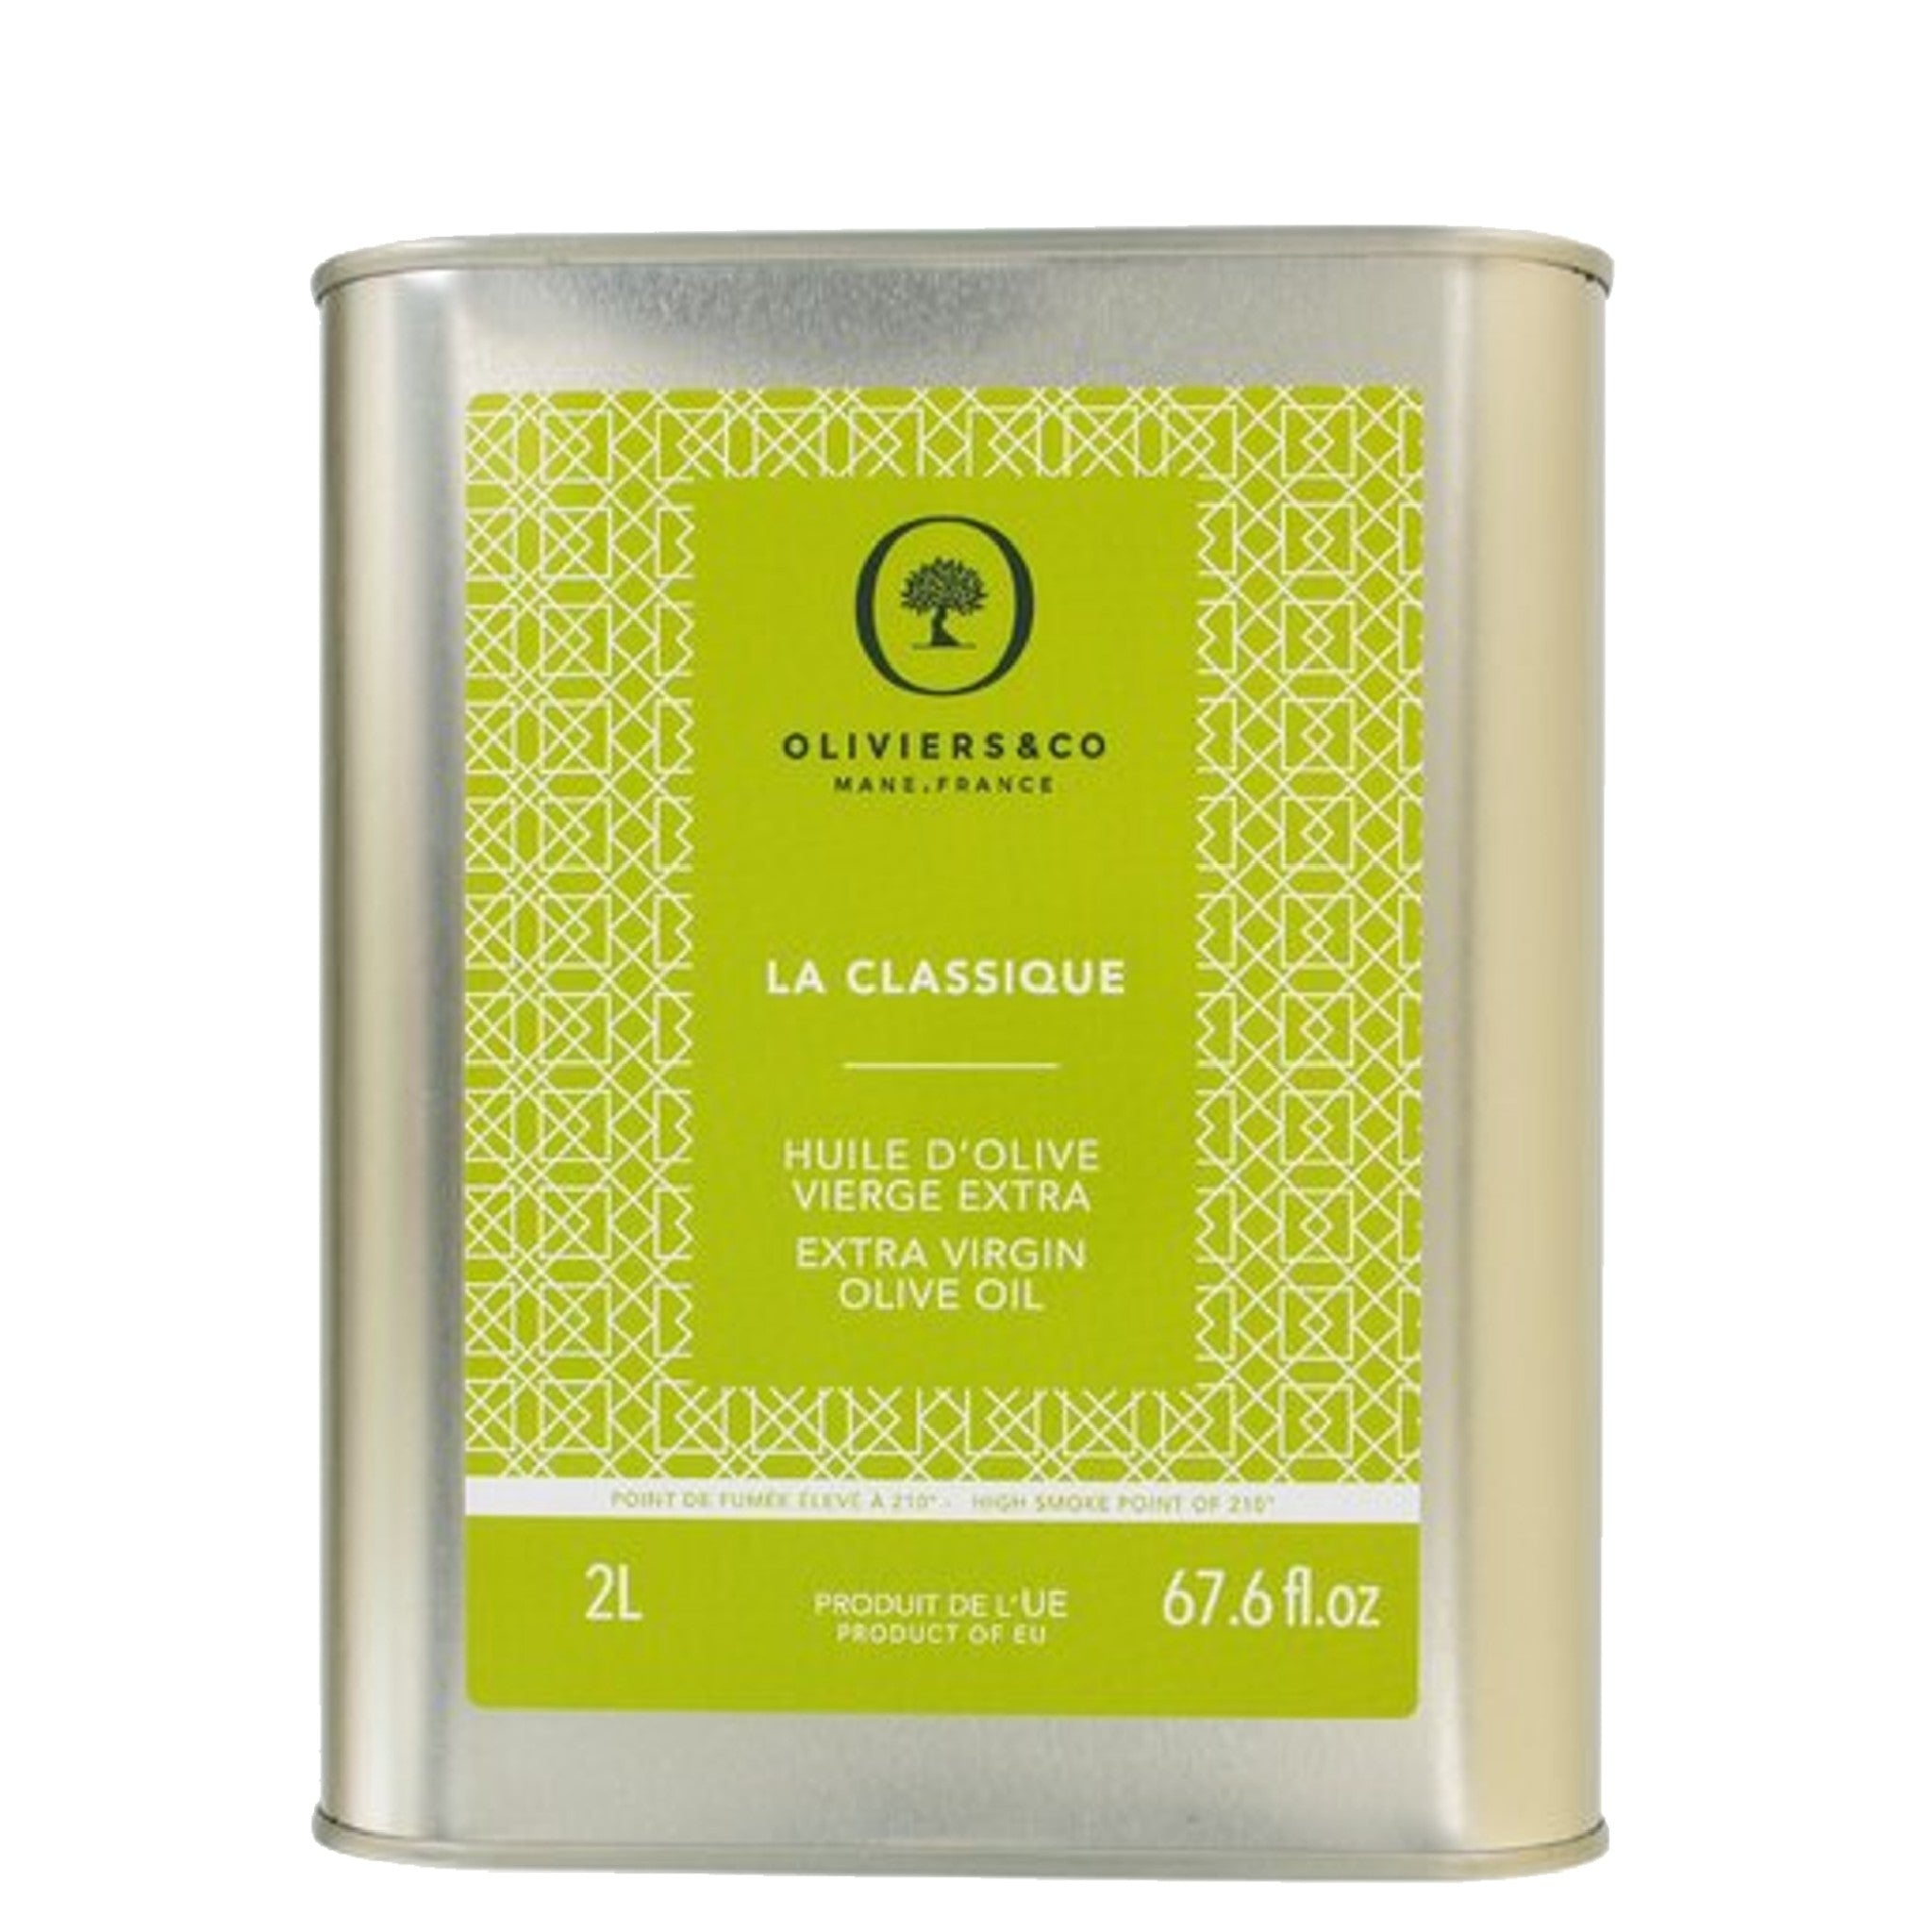 La Classique 2L basis ekstra jomfru olivenolie fra Oliviers & Co